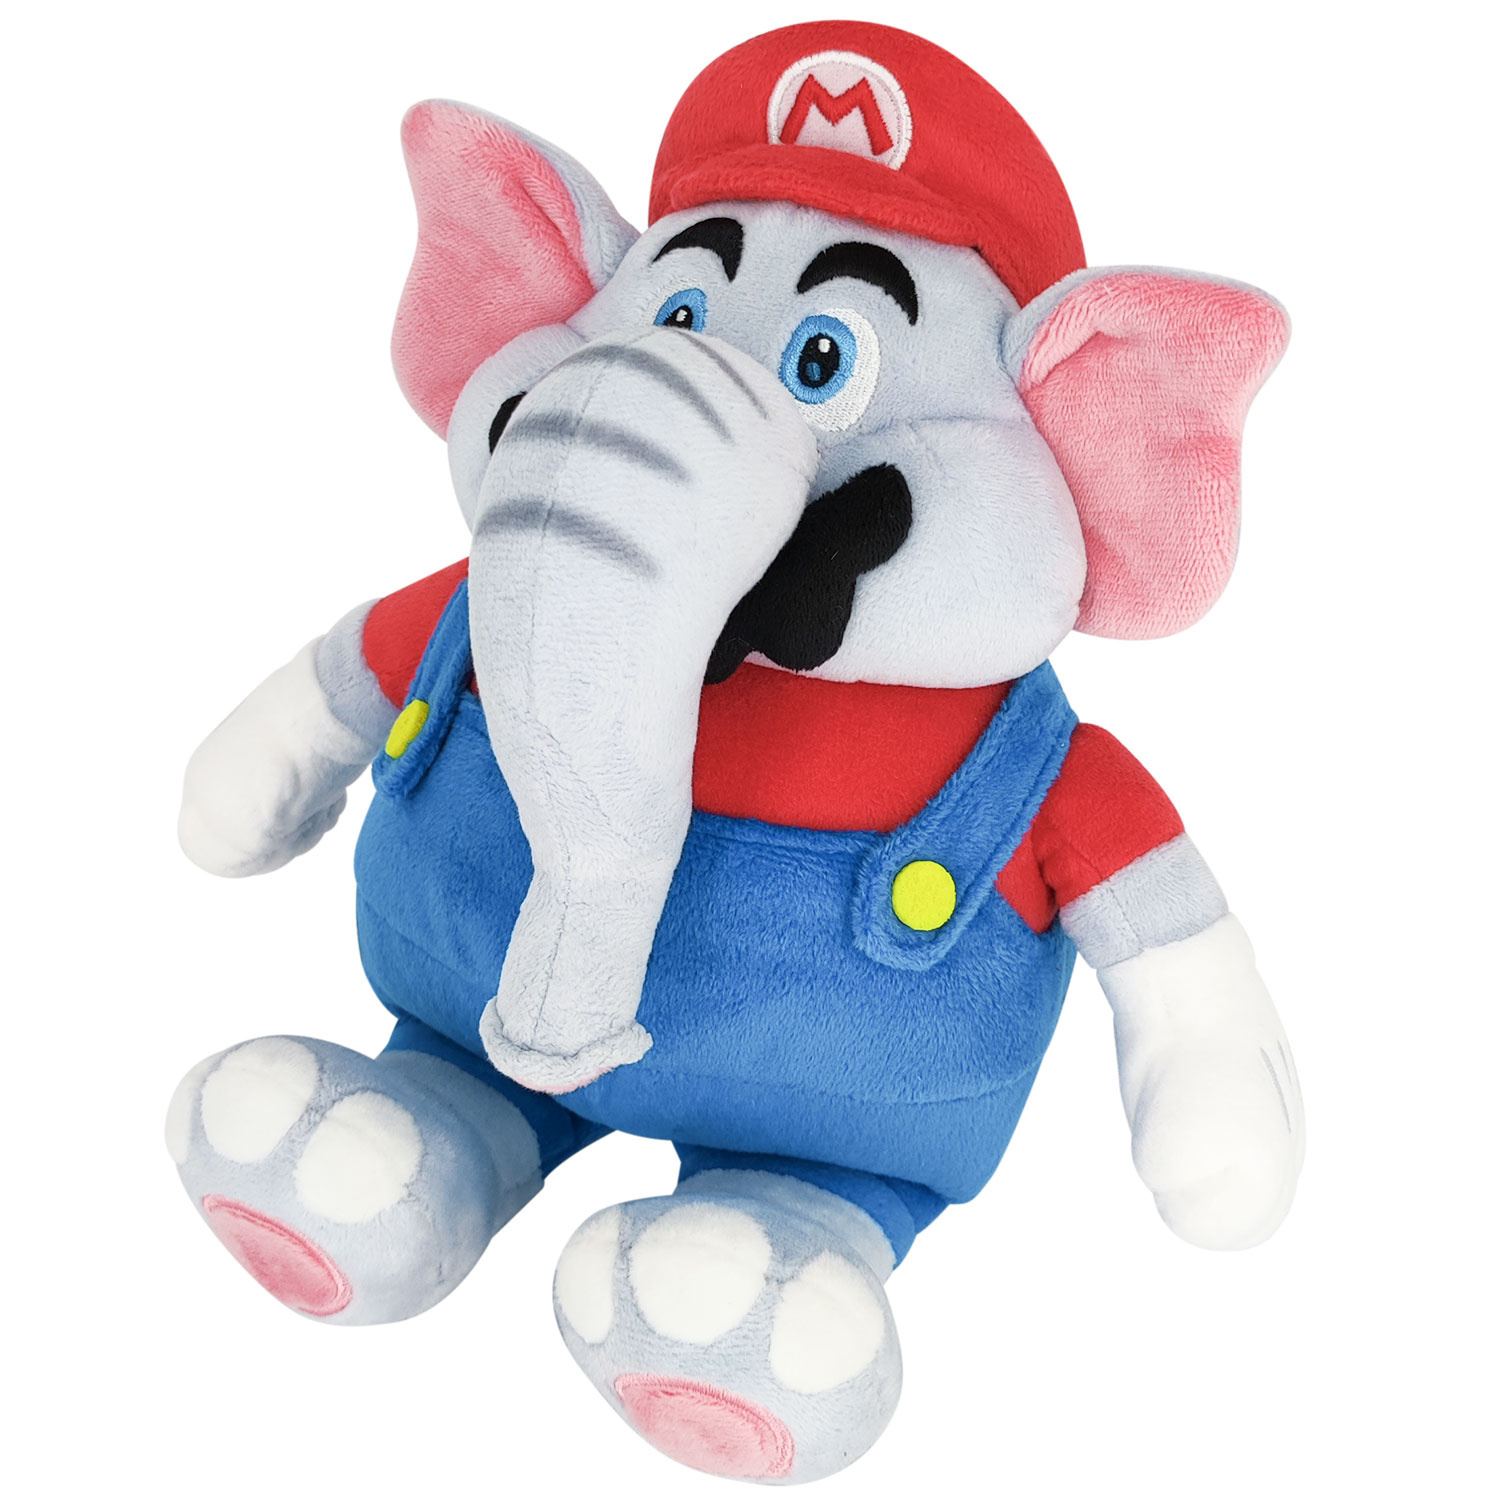 Super Mario Bros. Wonder Plush: SMW01 Elephant Mario (S) San-ei Boeki